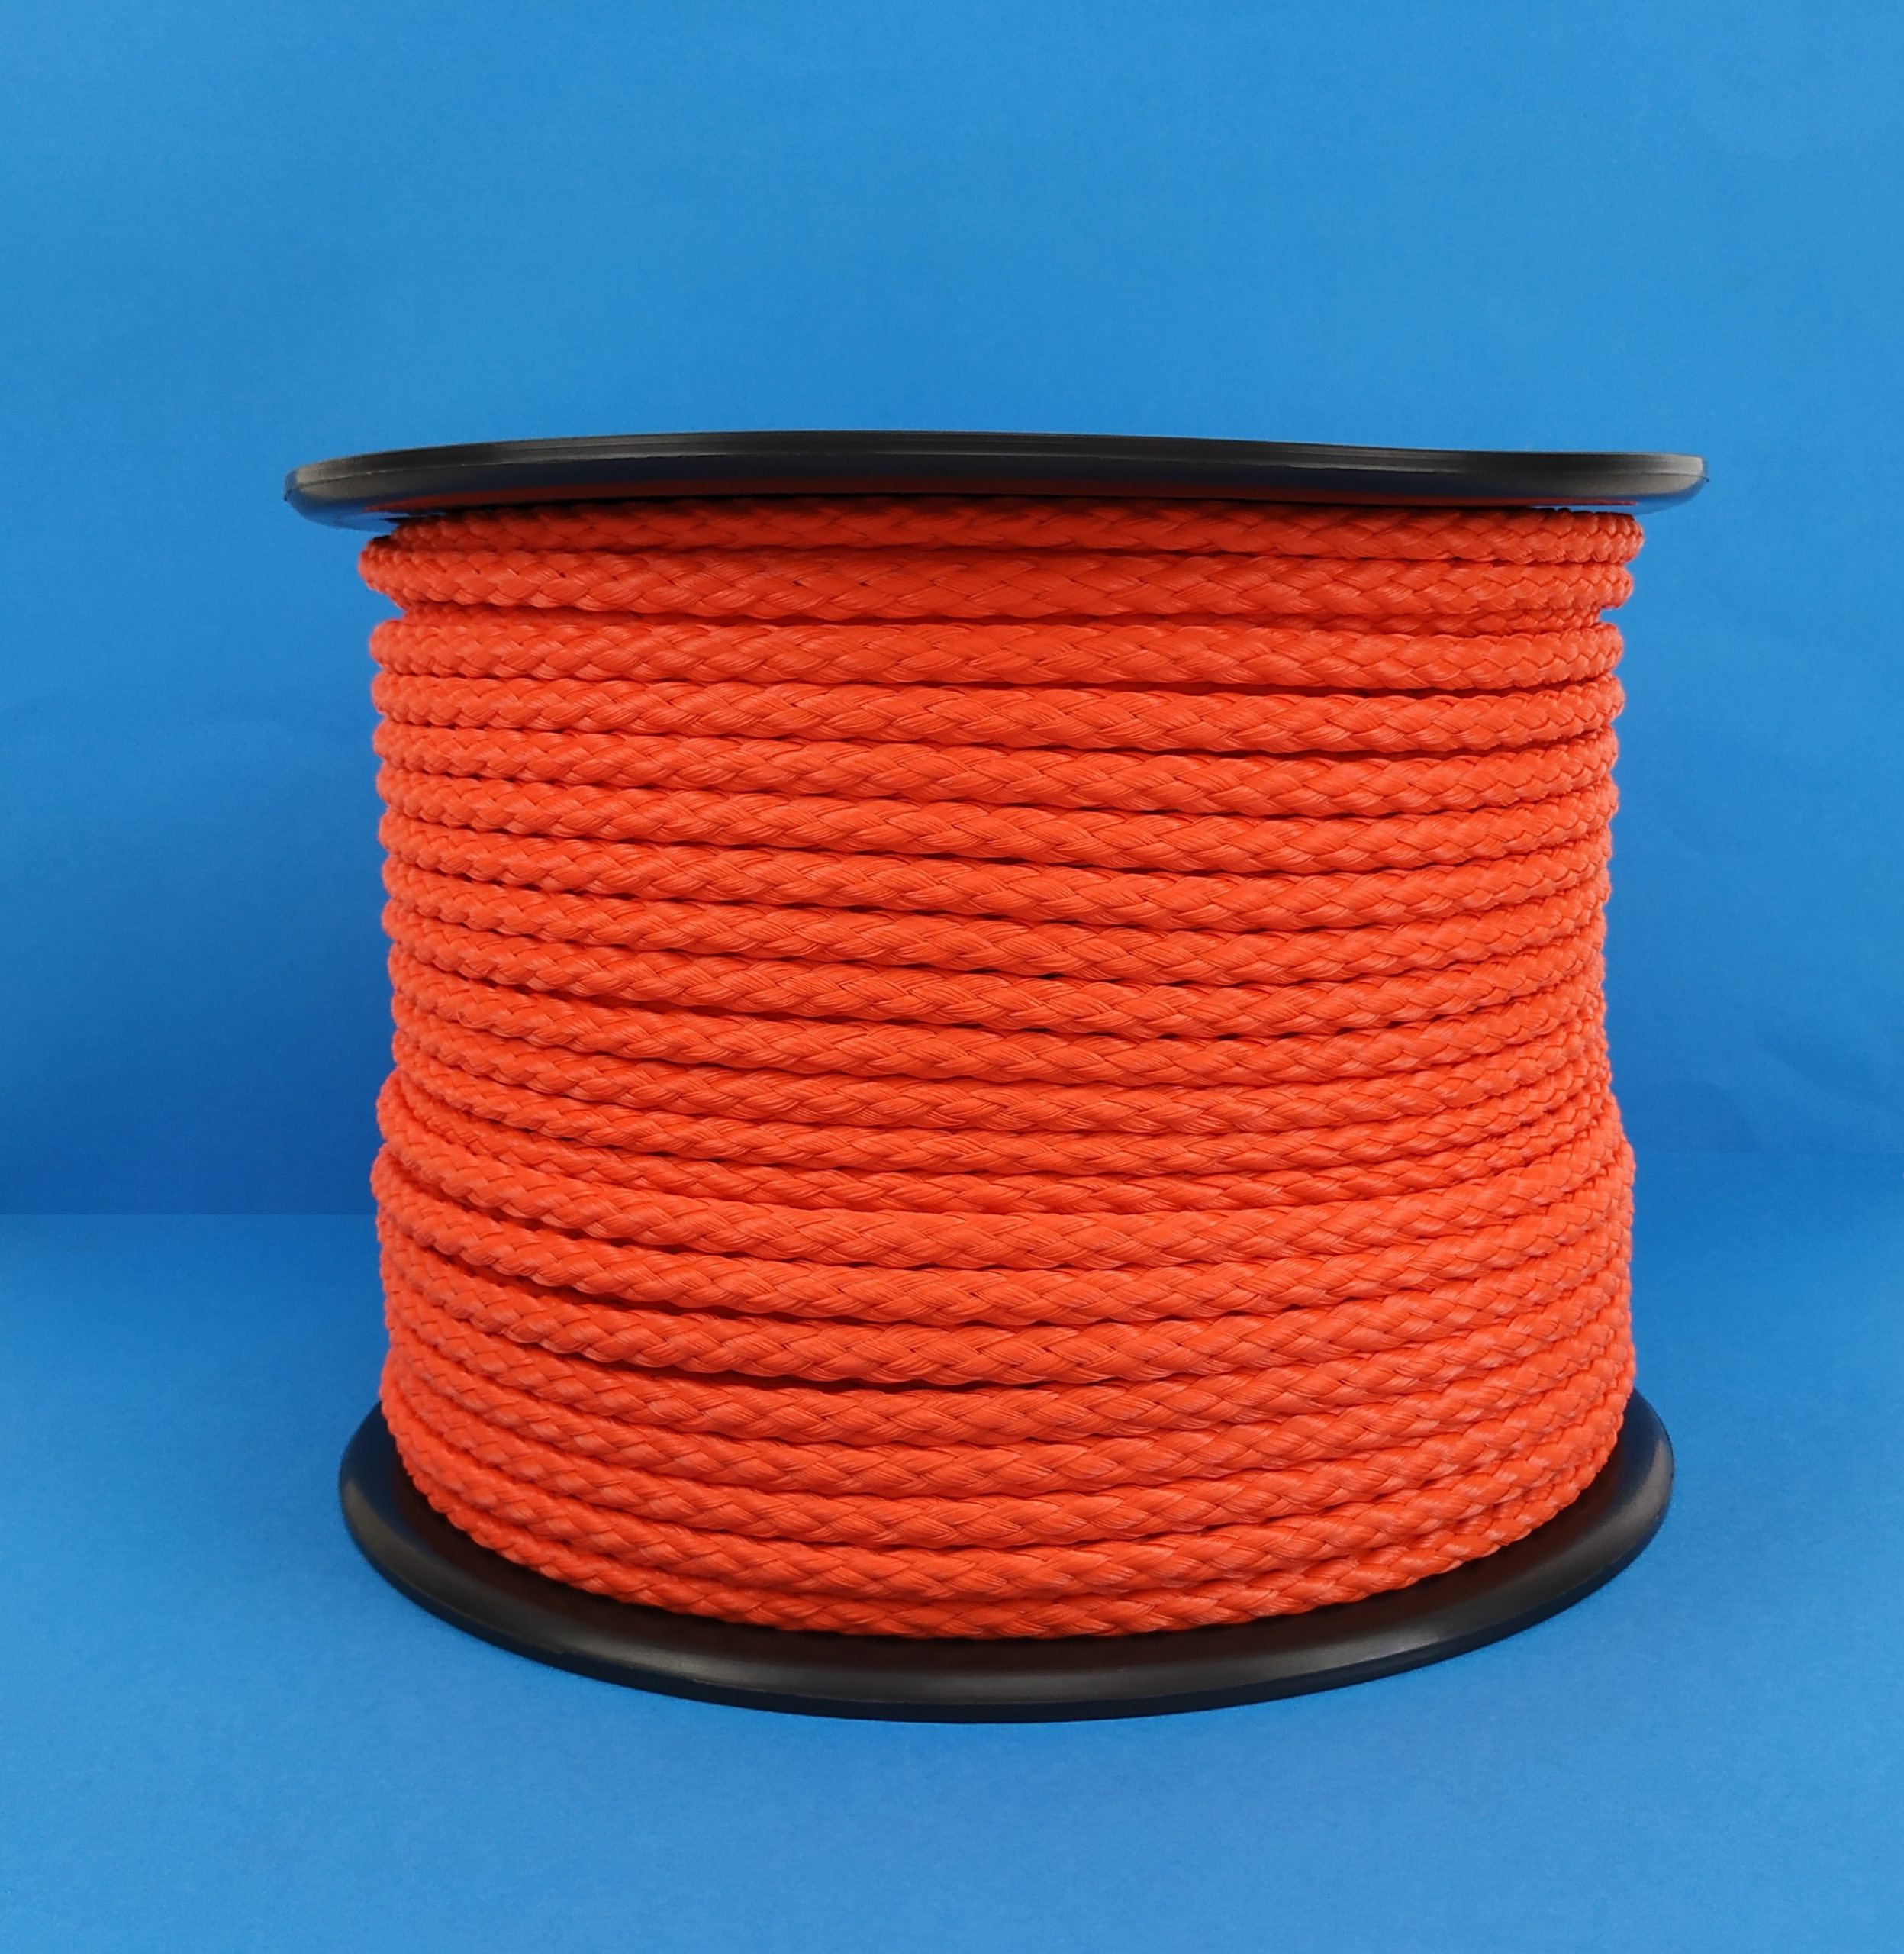 30 m Cuerda trenzada flotante en polietileno naranja 6 mm 